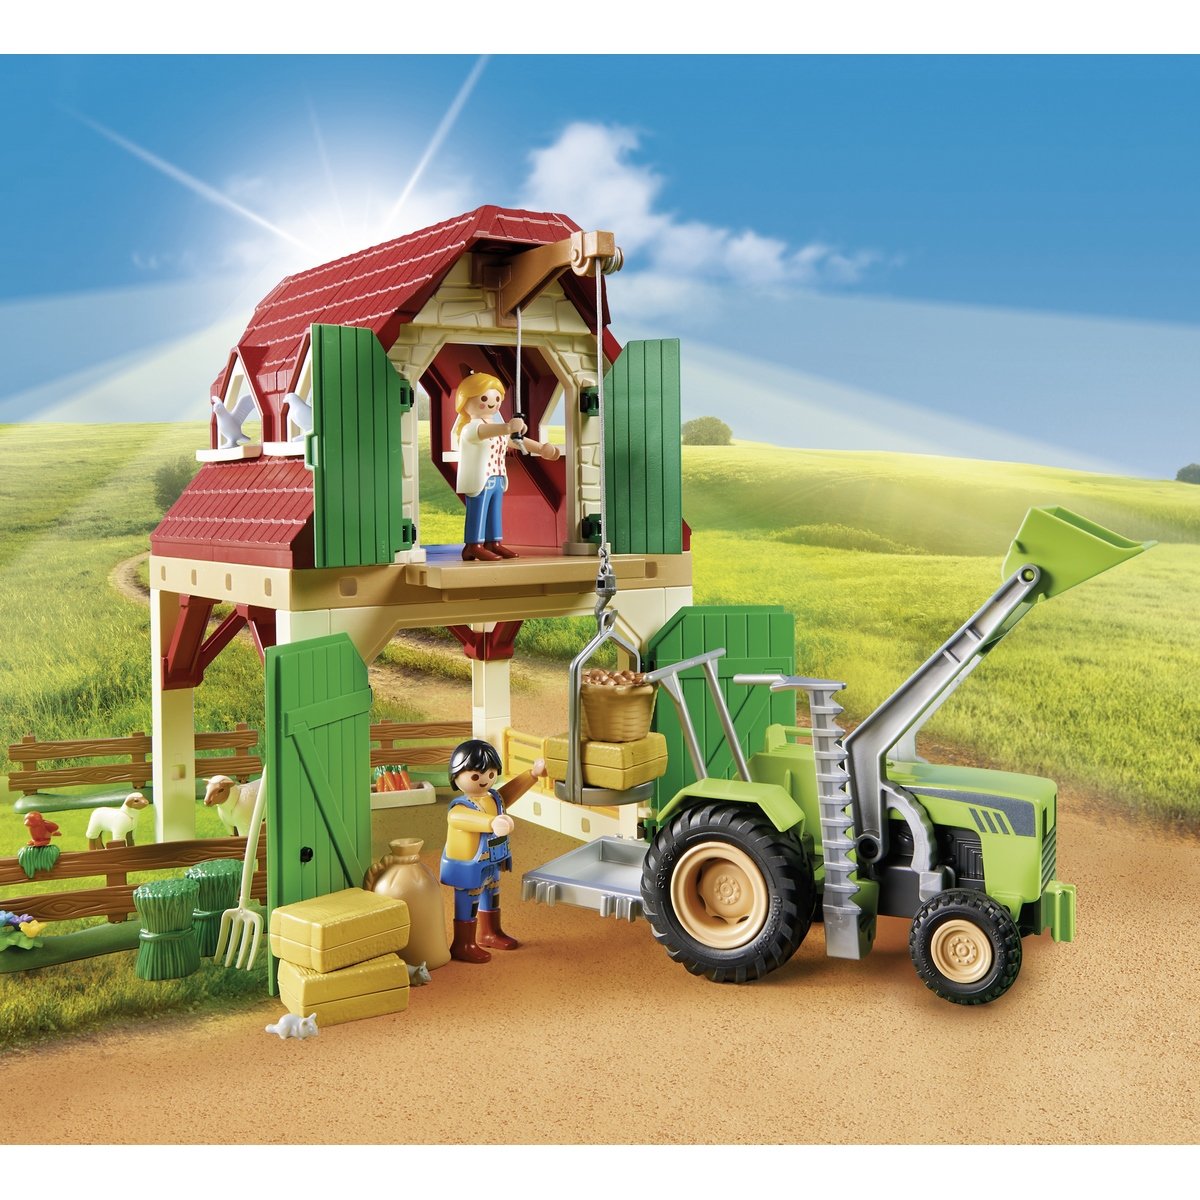 Animaux de la ferme - Playmobil 71307 - La Grande Récré